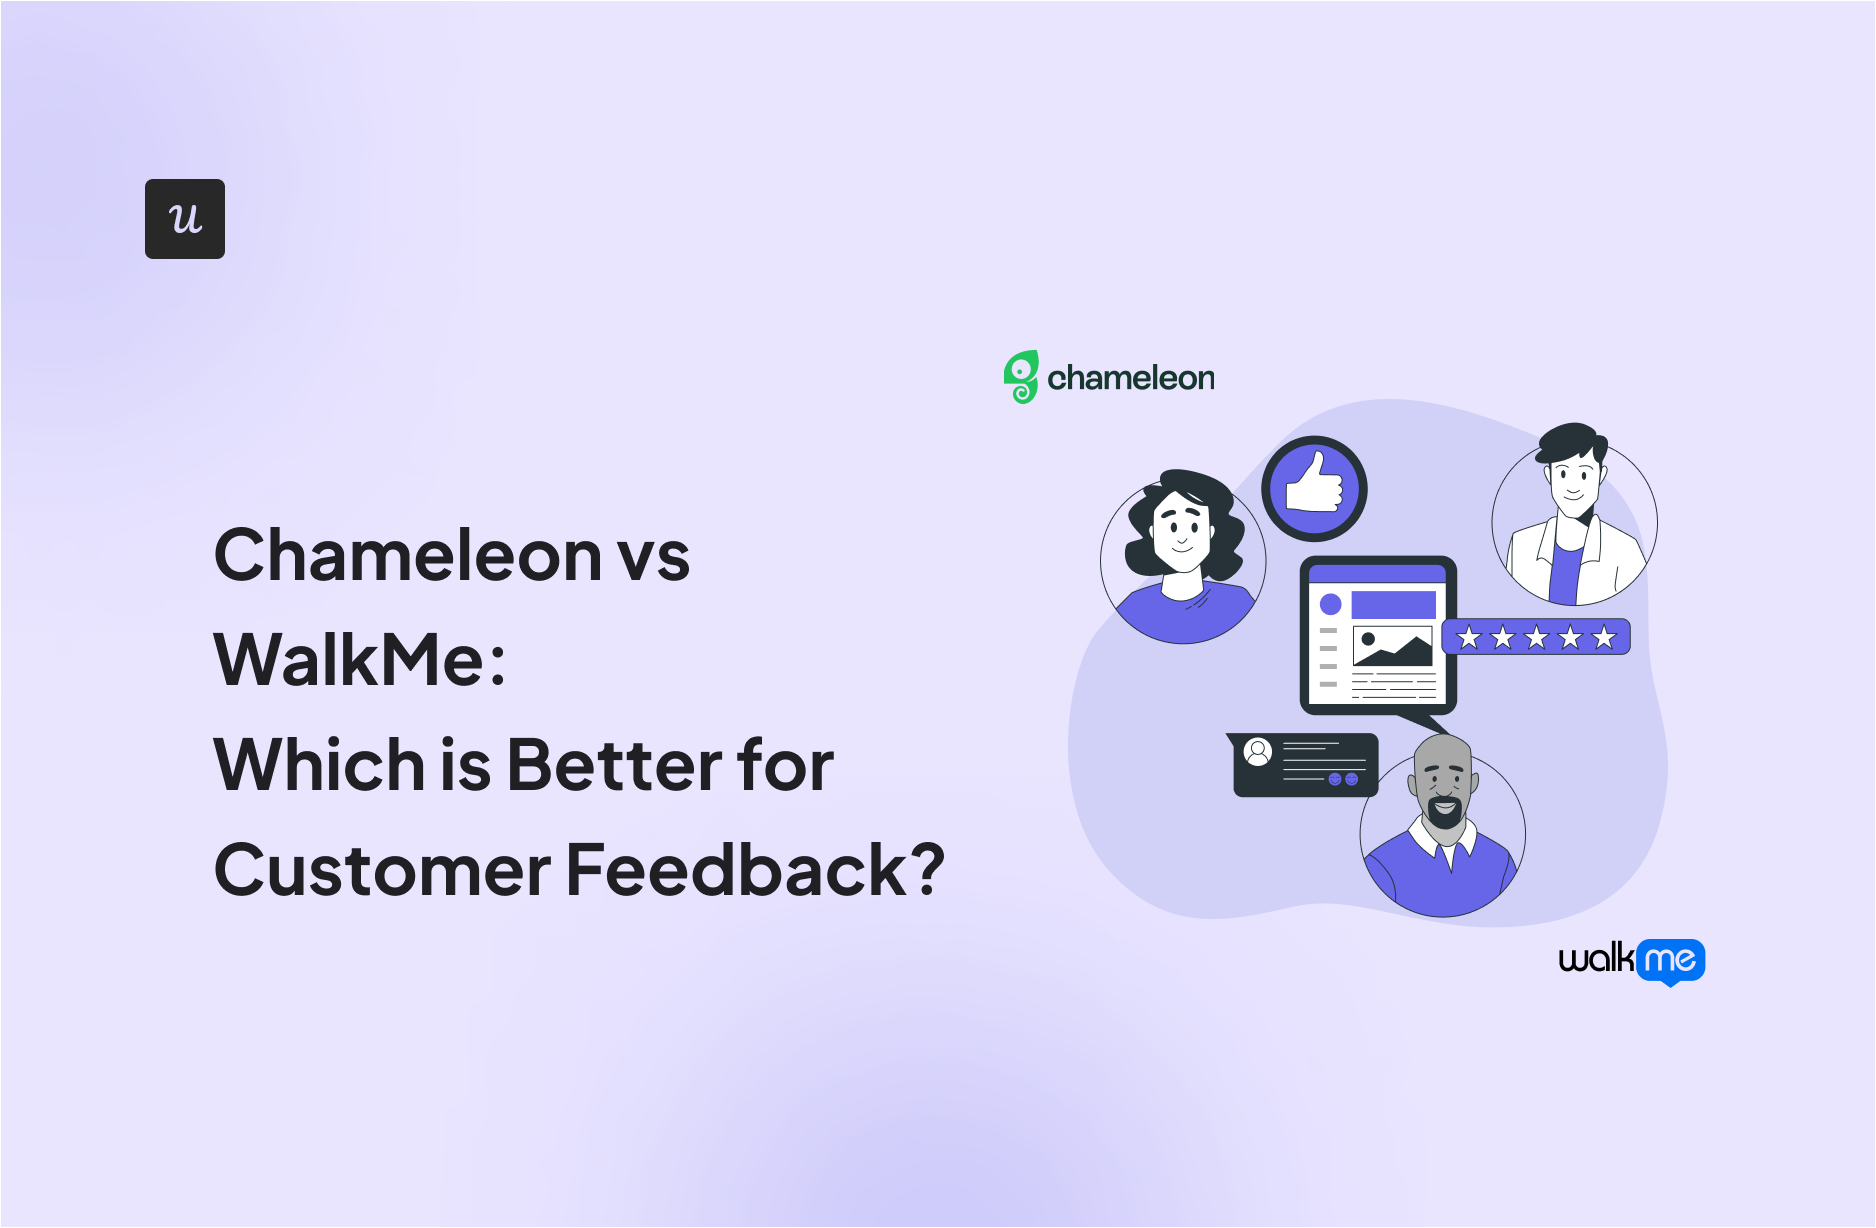 Chameleon vs WalkMe: Which is Better for Customer Feedback?